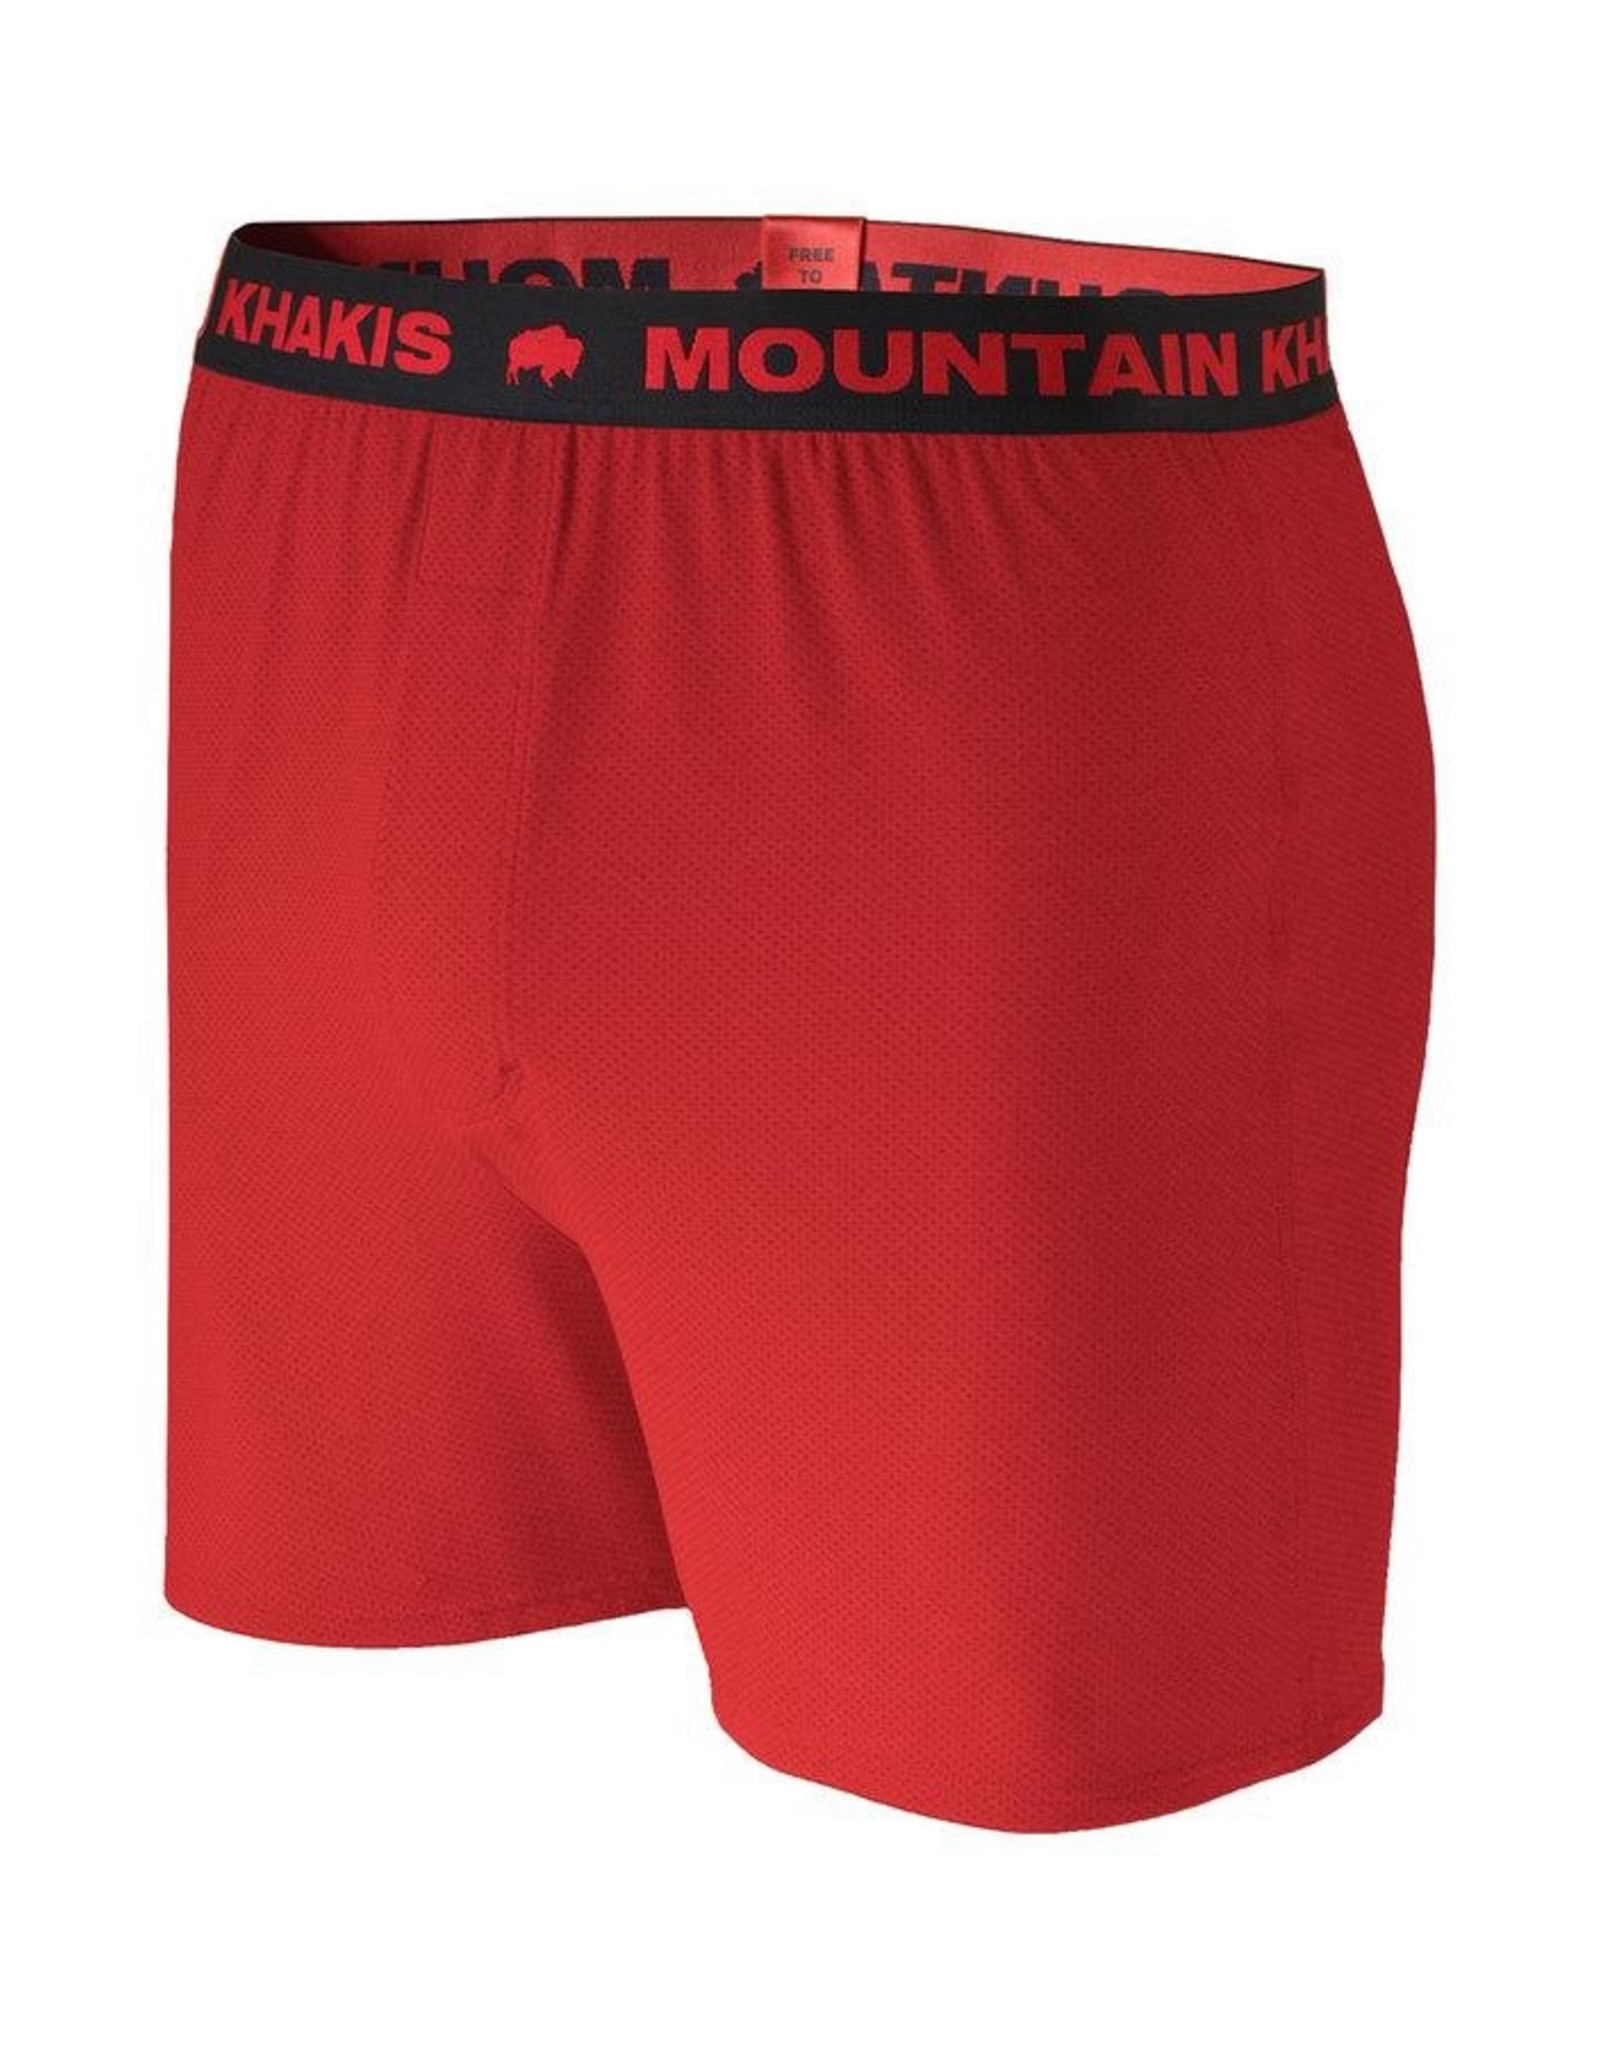 Mountain Khakis Mountain Khakis M Bison Boxers